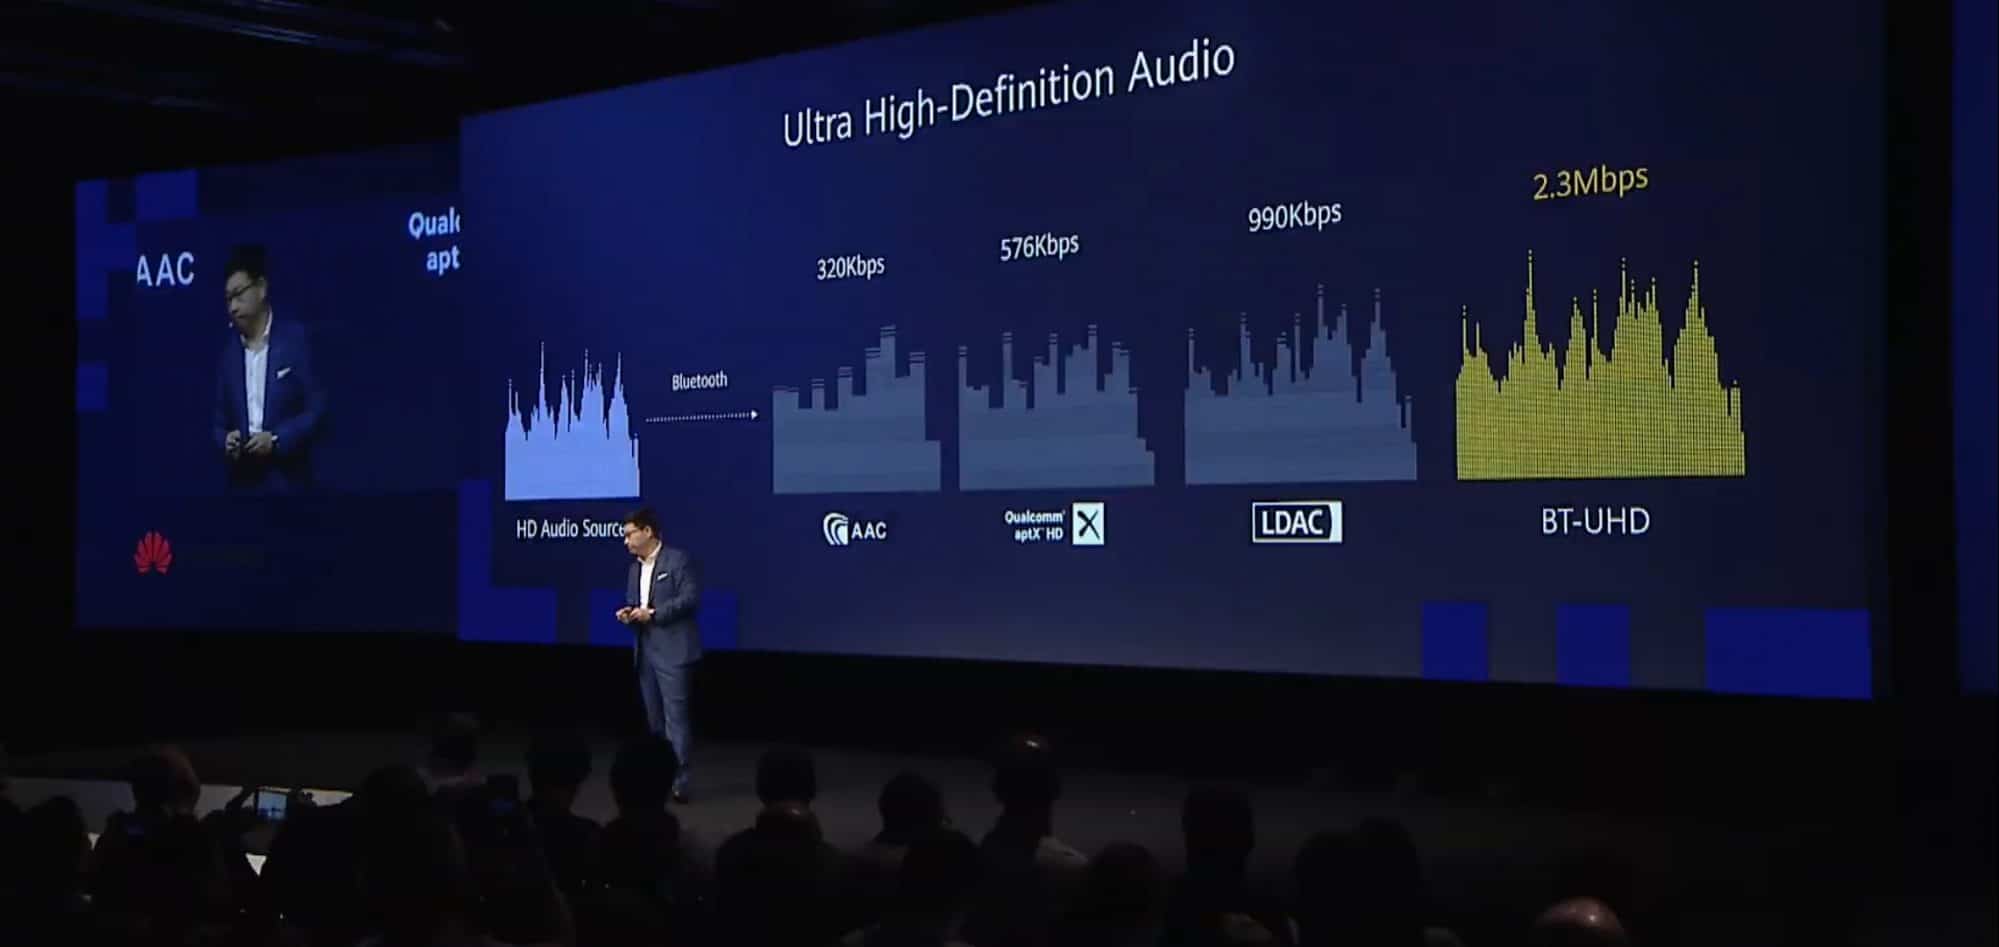 HUAWEI เปิดตัวชิป Kirin A1 สำหรับหูฟัง เชื่อมต่อแยกข้าง ดีเลย์ต่ำ กินไฟน้อย ส่งข้อมูลสูงสุด 2.5 Mbps พร้อมใส่ใน FreeBuds 3 9